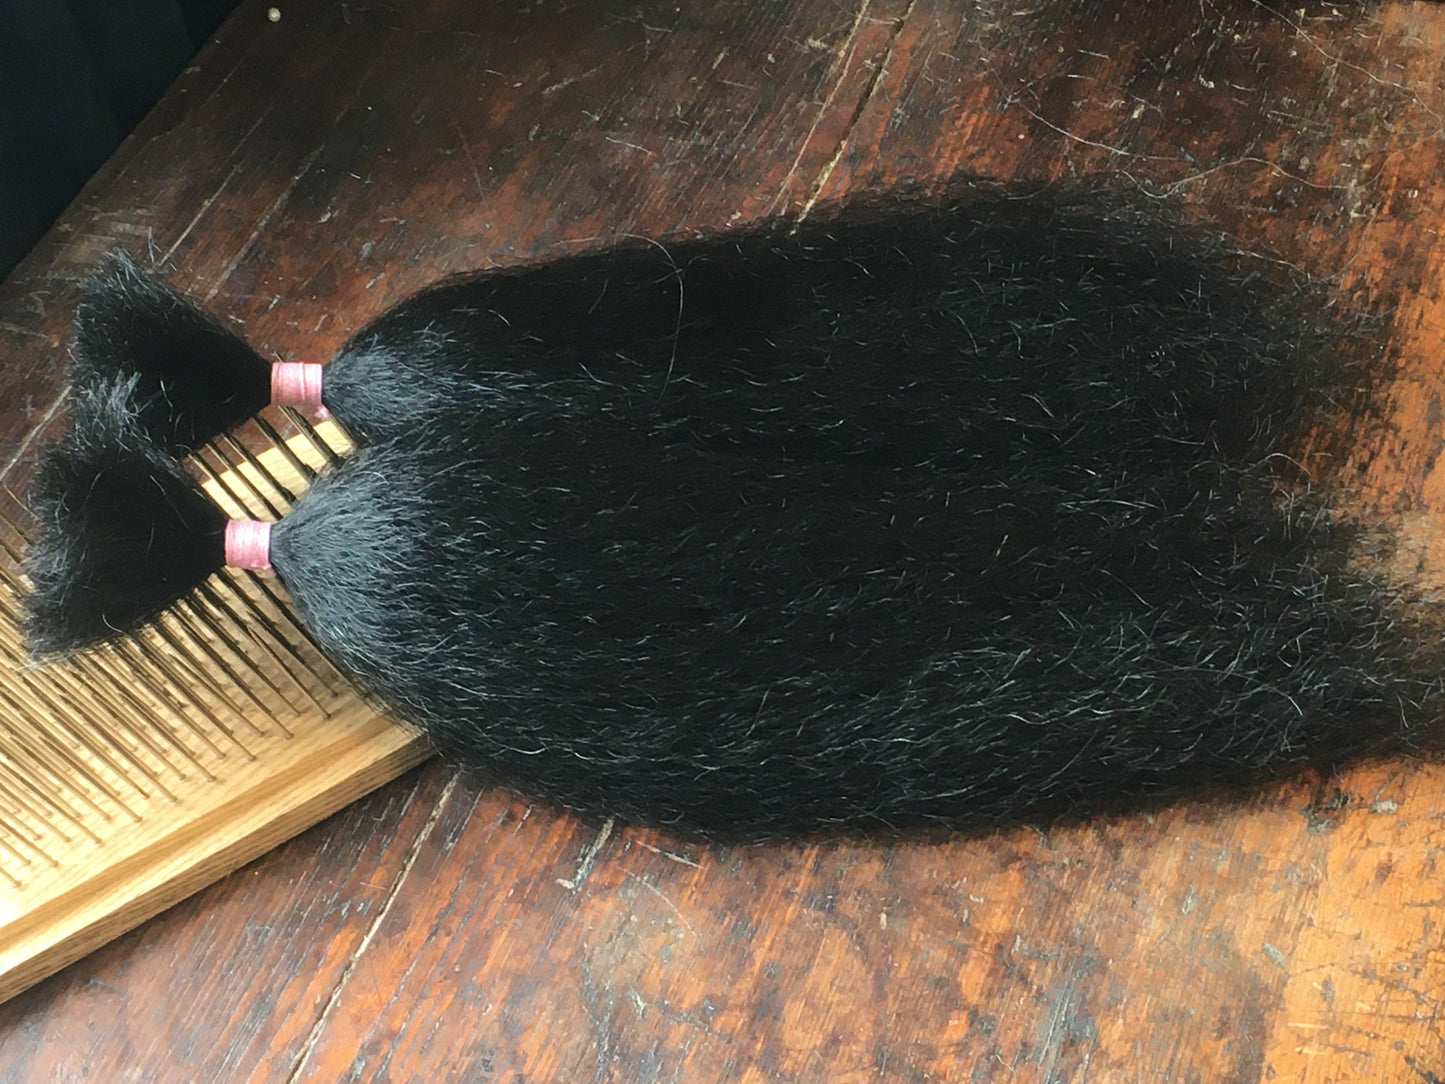 860  Soft Washed Natural Black Belly Yak - Various Lengths - 30 Gram Bundle